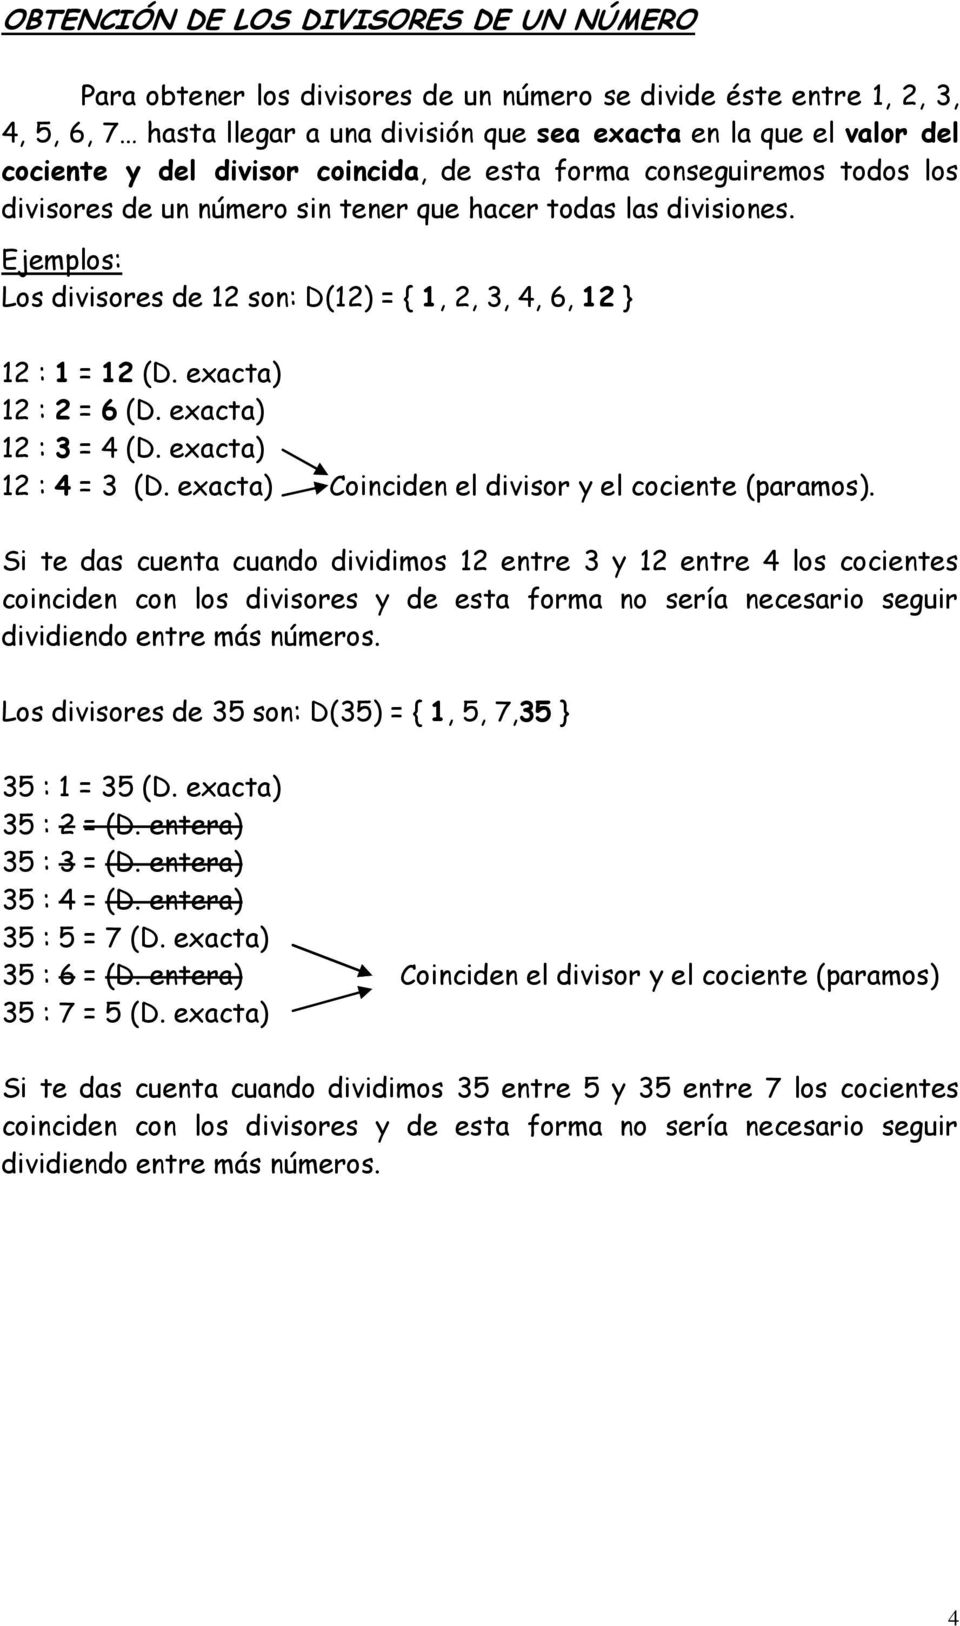 Ejemplos: Los divisores de 12 son: D(12) = { 1, 2, 3, 4, 6, 12 } 12 : 1 = 12 (D. exacta) 12 : 2 = 6 (D. exacta) 12 : 3 = 4 (D. exacta) 12 : 4 = 3 (D.